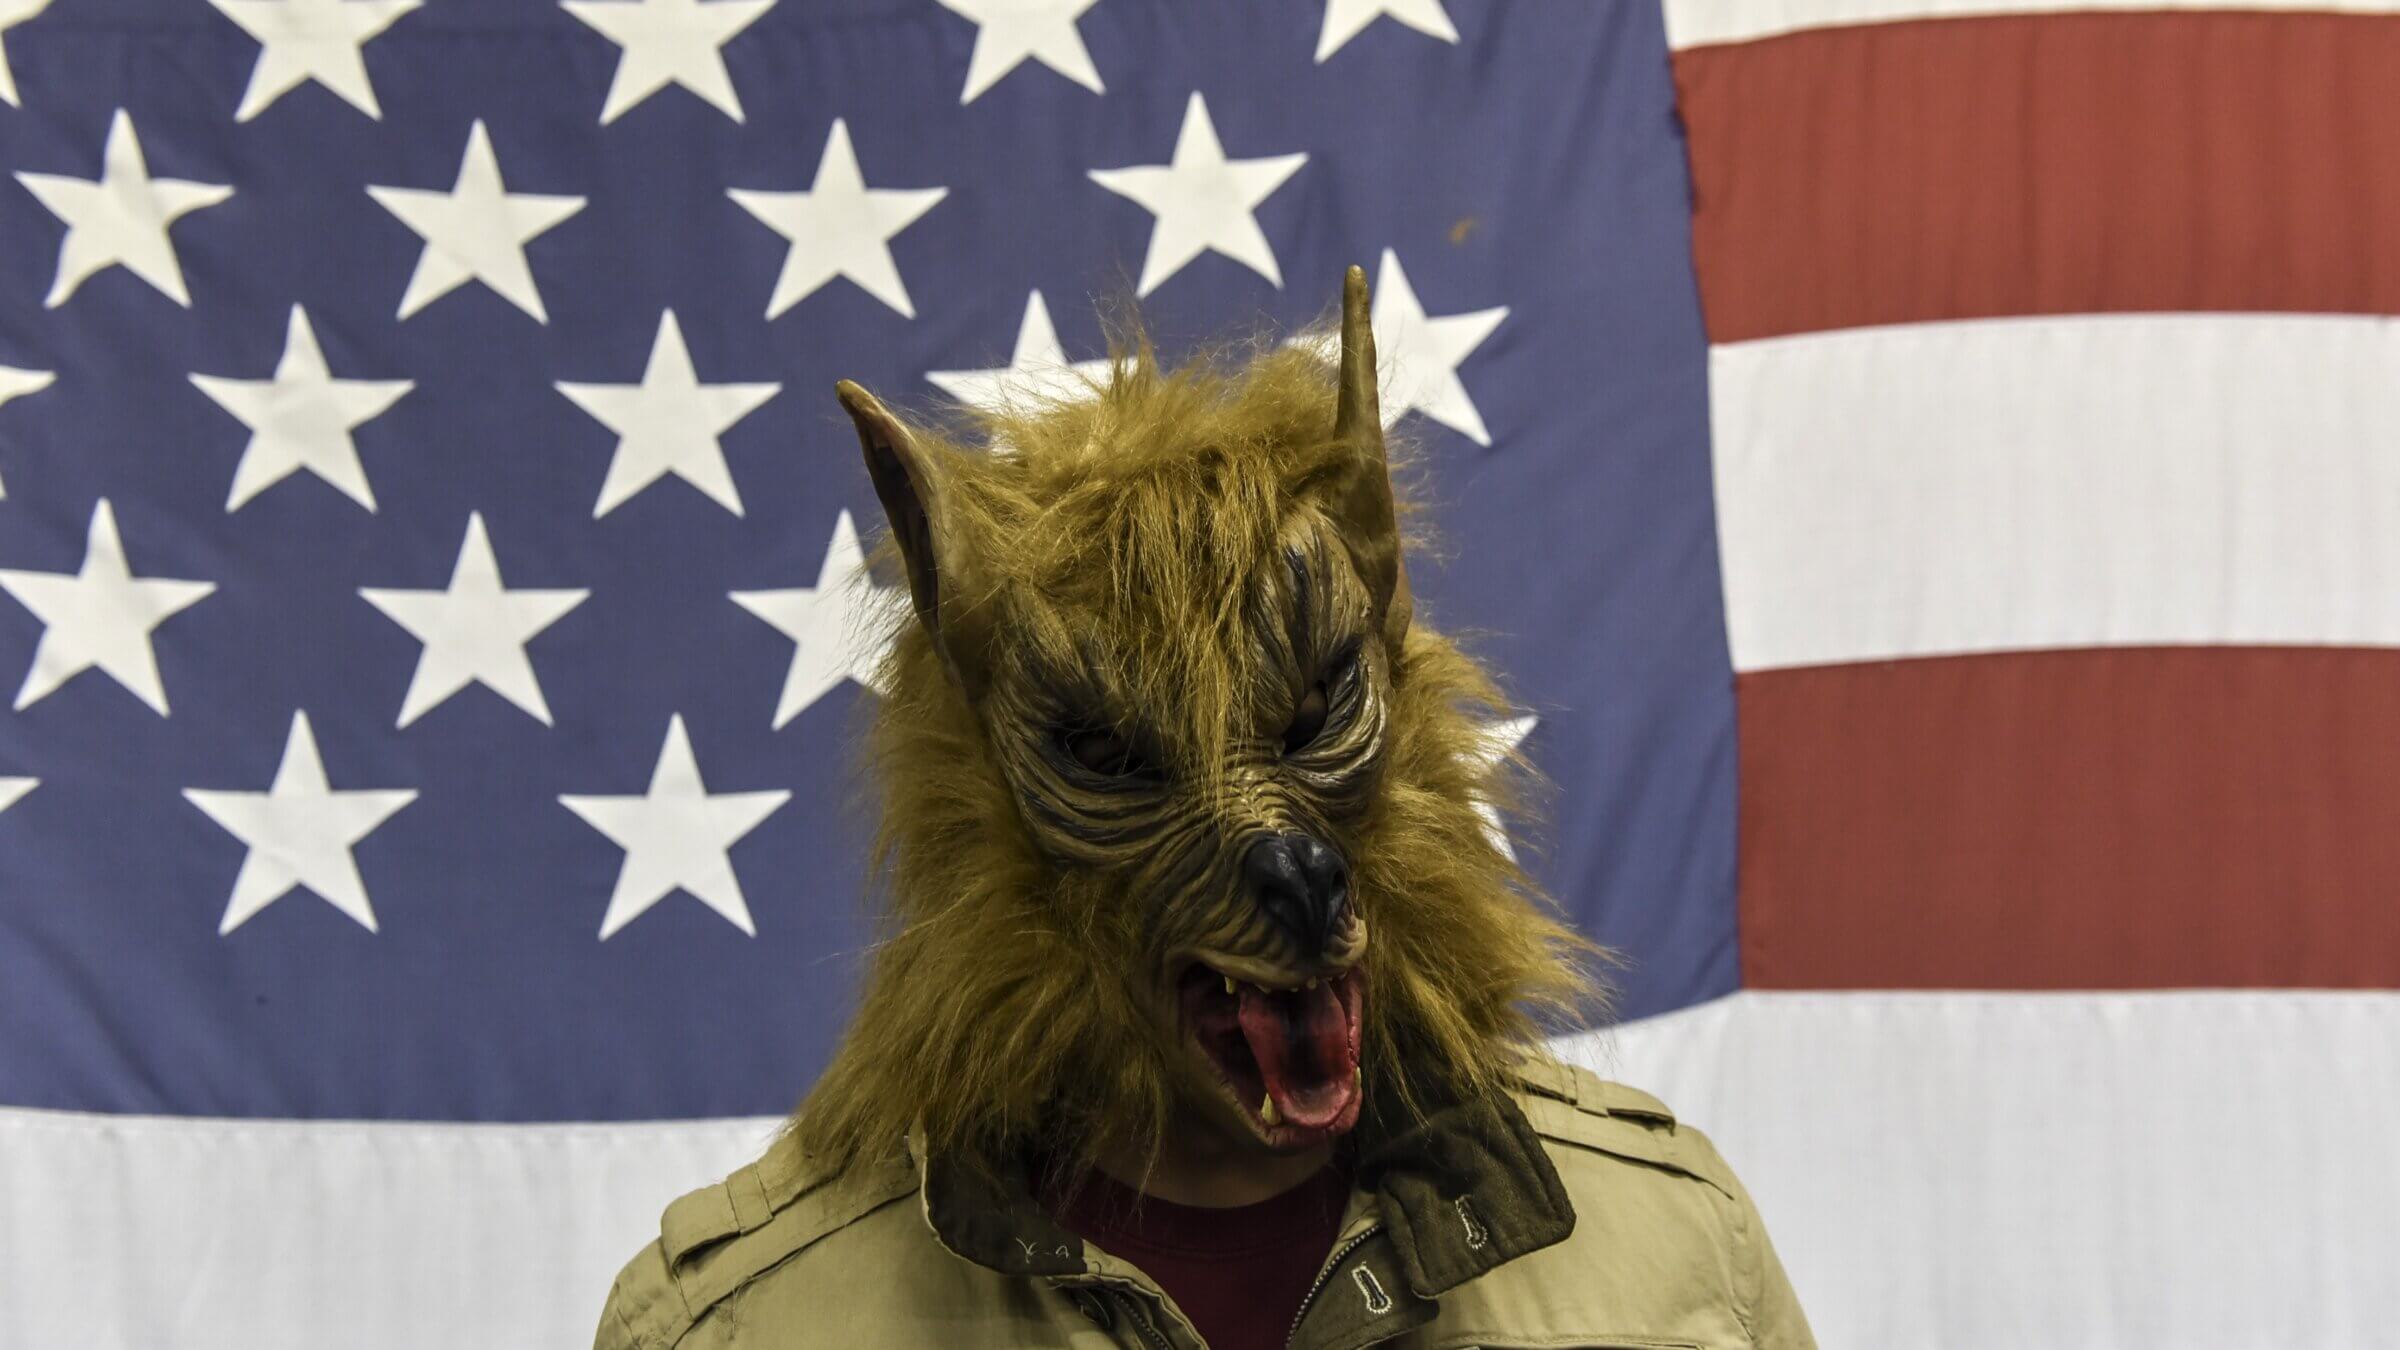 An all American werewolf.